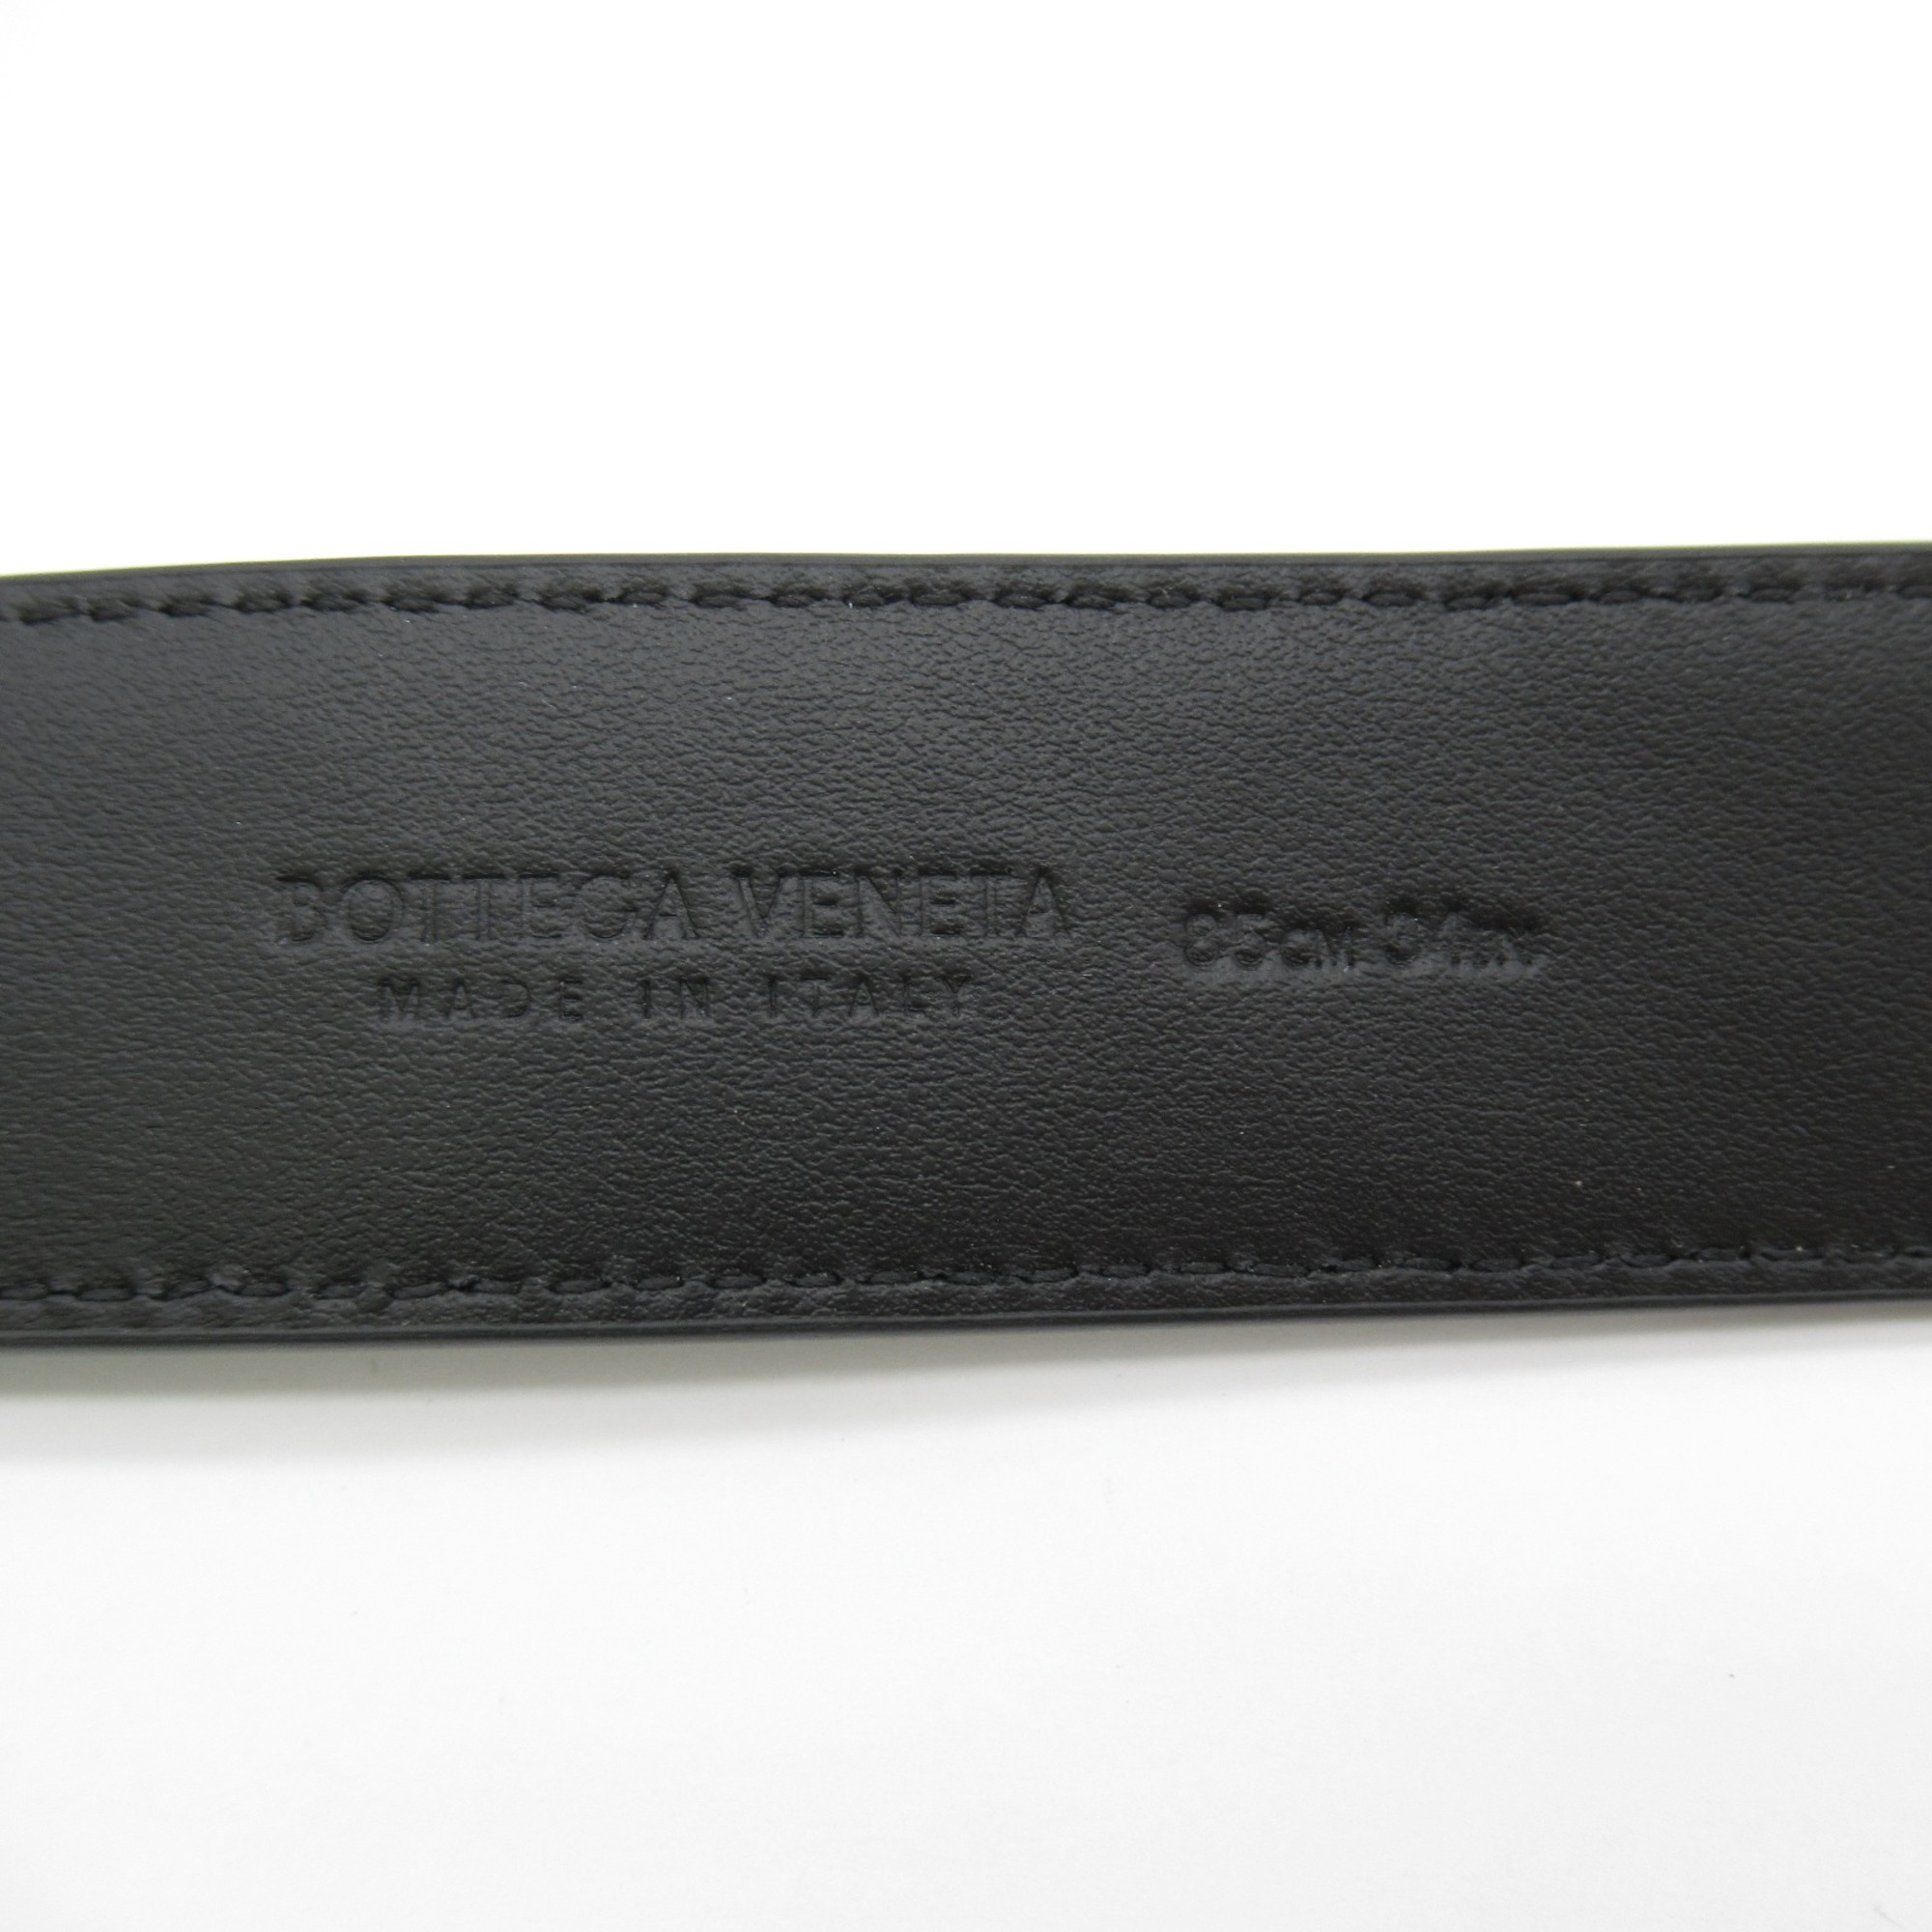 BOTTEGA VENETA Intrecciato belt Black Calfskin (cowhide) 734910V2Q81101985